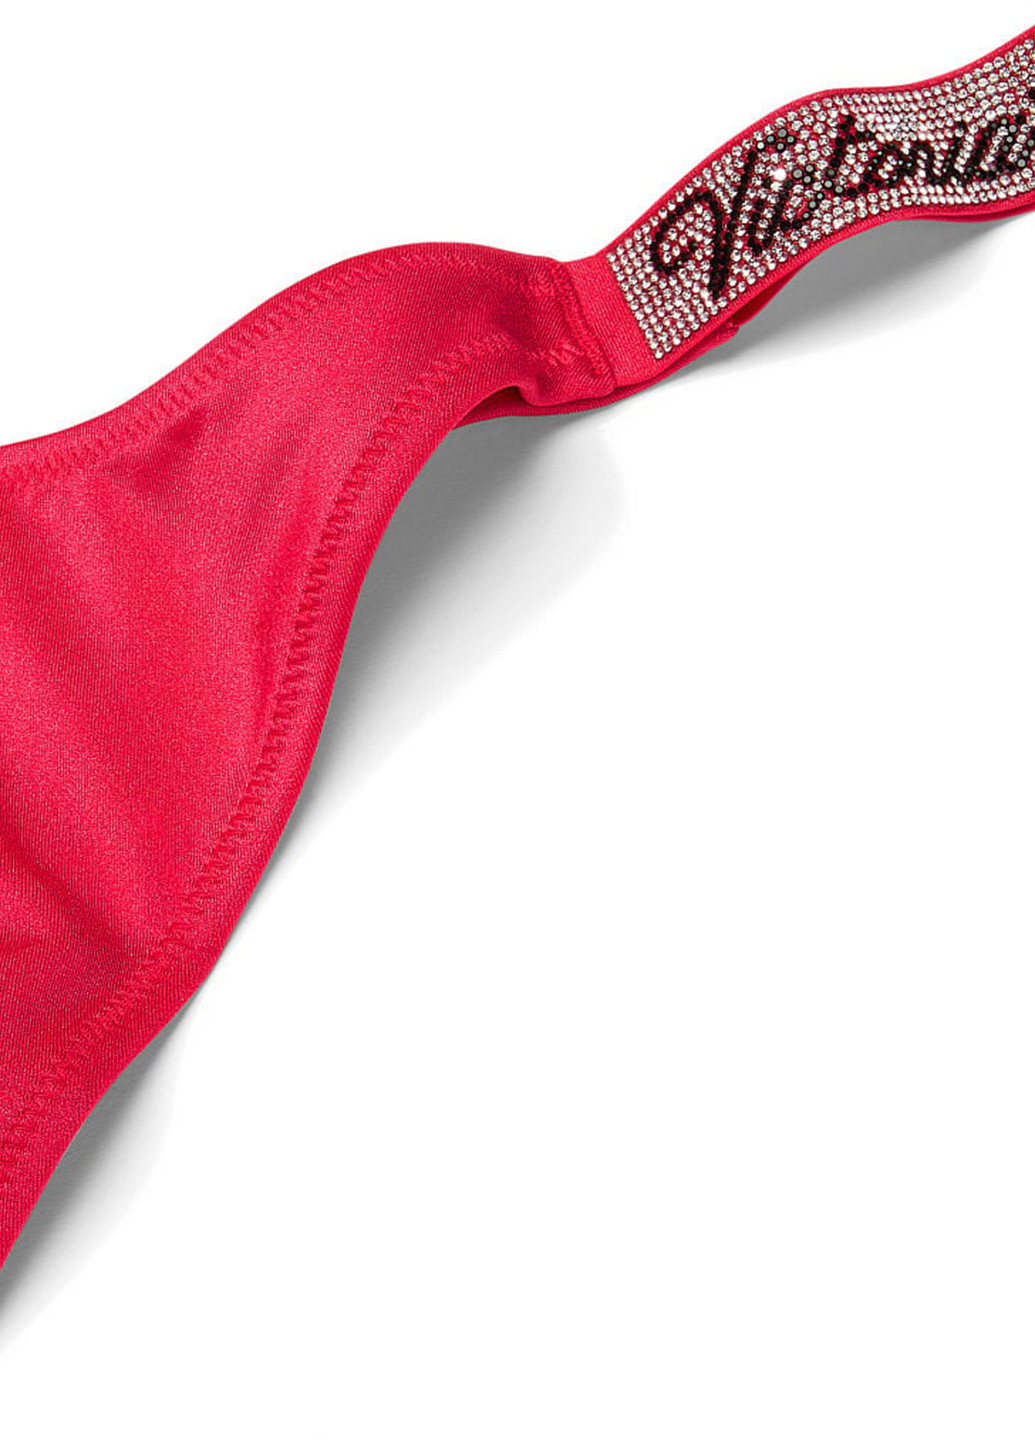 Рожевий літній купальник (ліф, труси) роздільний, бікіні Victoria's Secret